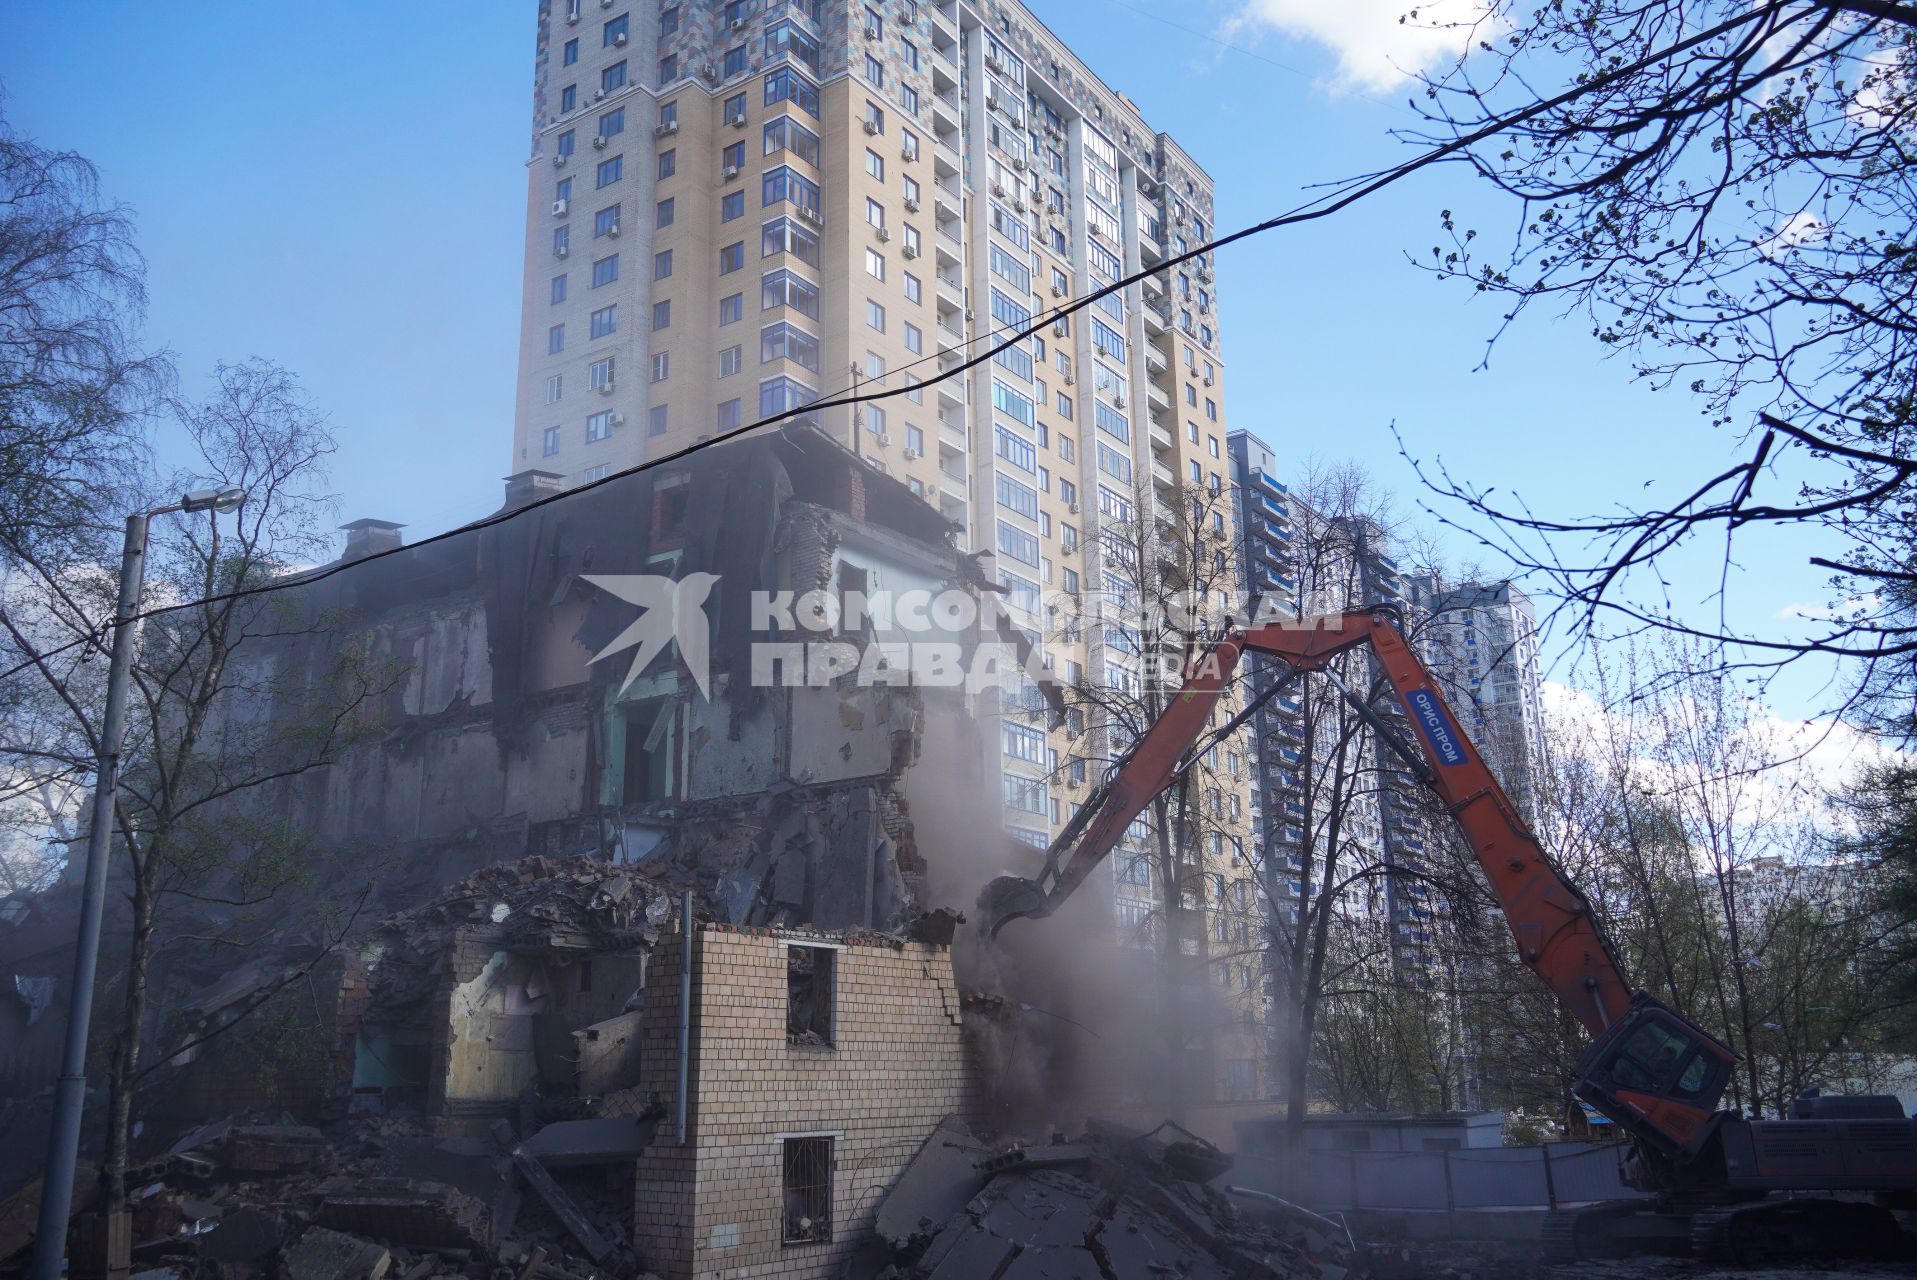 Снос жилого дома по программе реновации в Москве